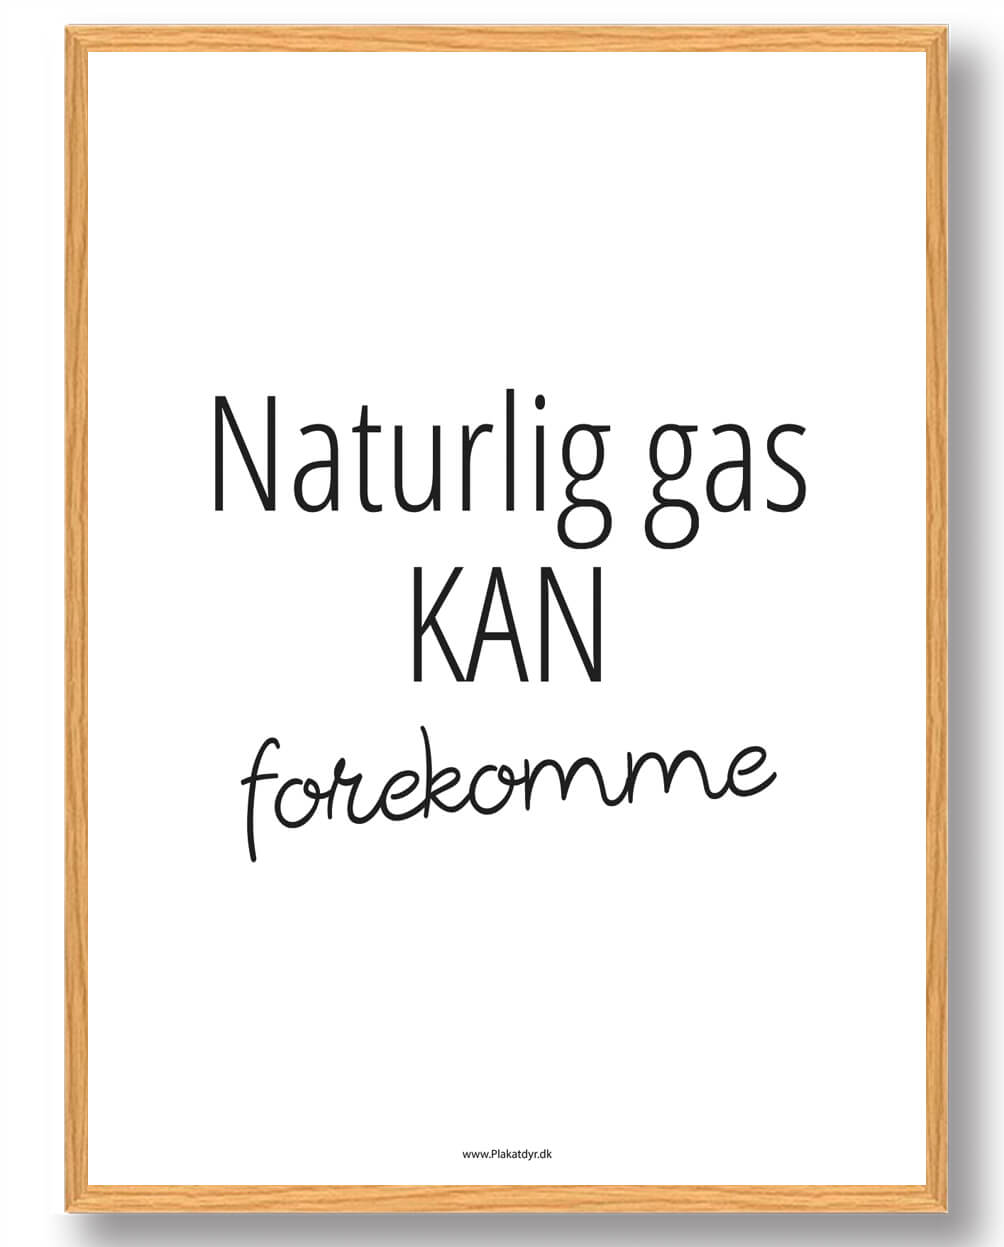 Naturlig gas fra forekomme - plakat